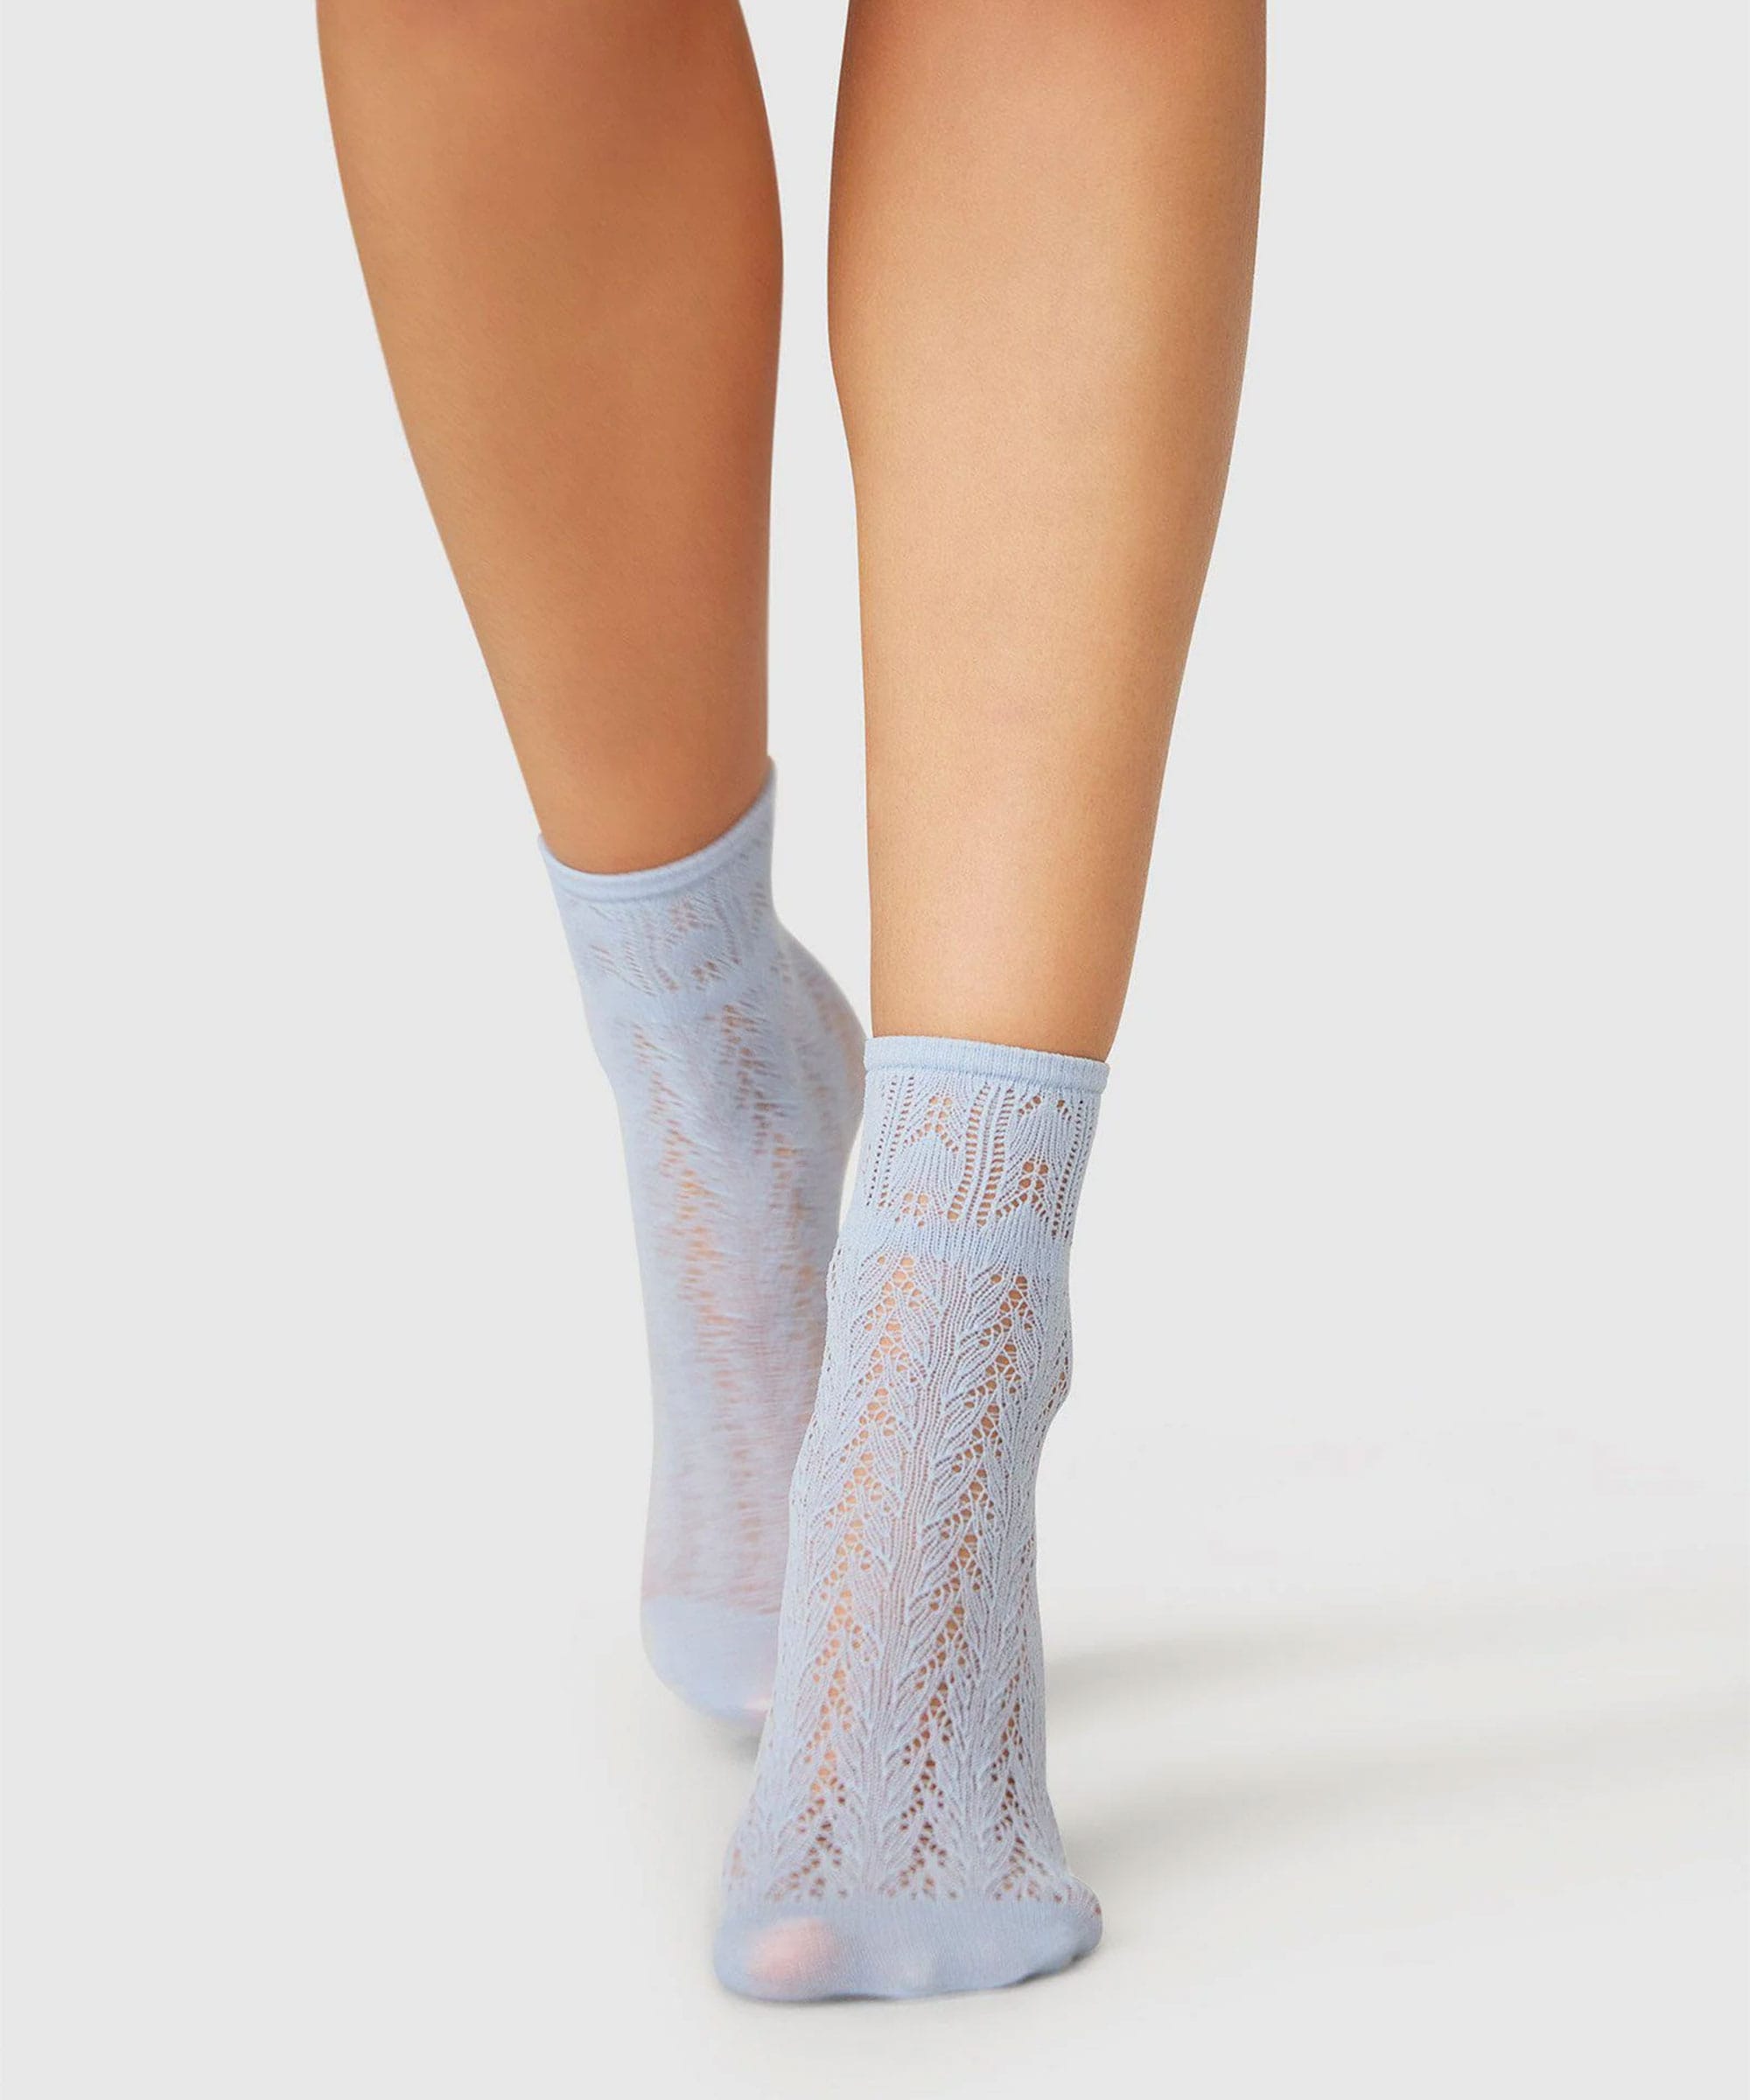 Erica Crochet Socks Blue